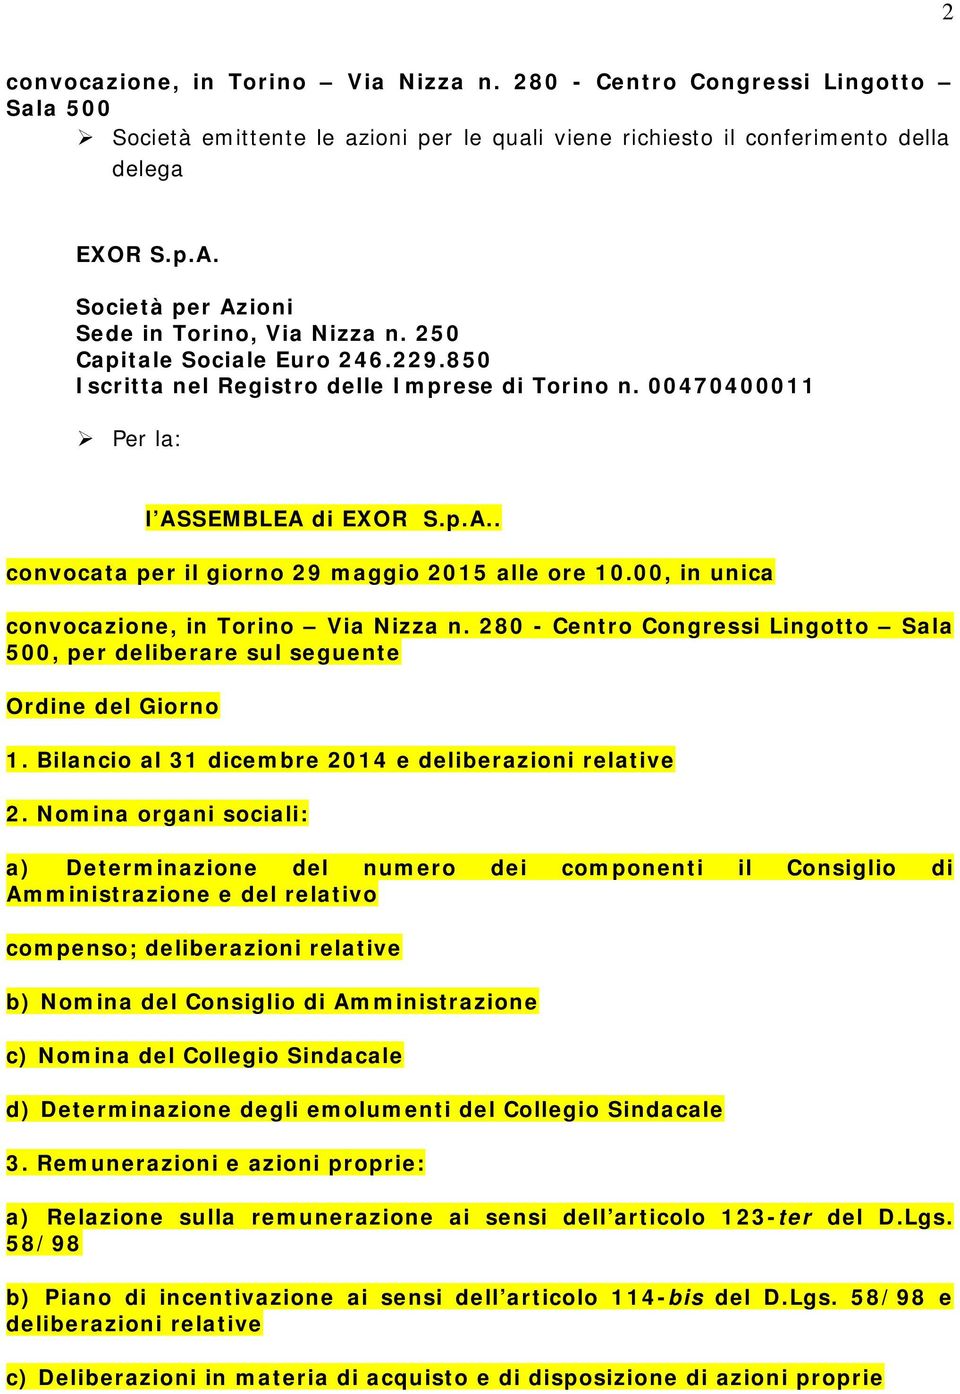 00, in unica convocazione, in Torino Via Nizza n. 280 - Centro Congressi Lingotto Sala 500, per deliberare sul seguente Ordine del Giorno 1. Bilancio al 31 dicembre 2014 e deliberazioni relative 2.